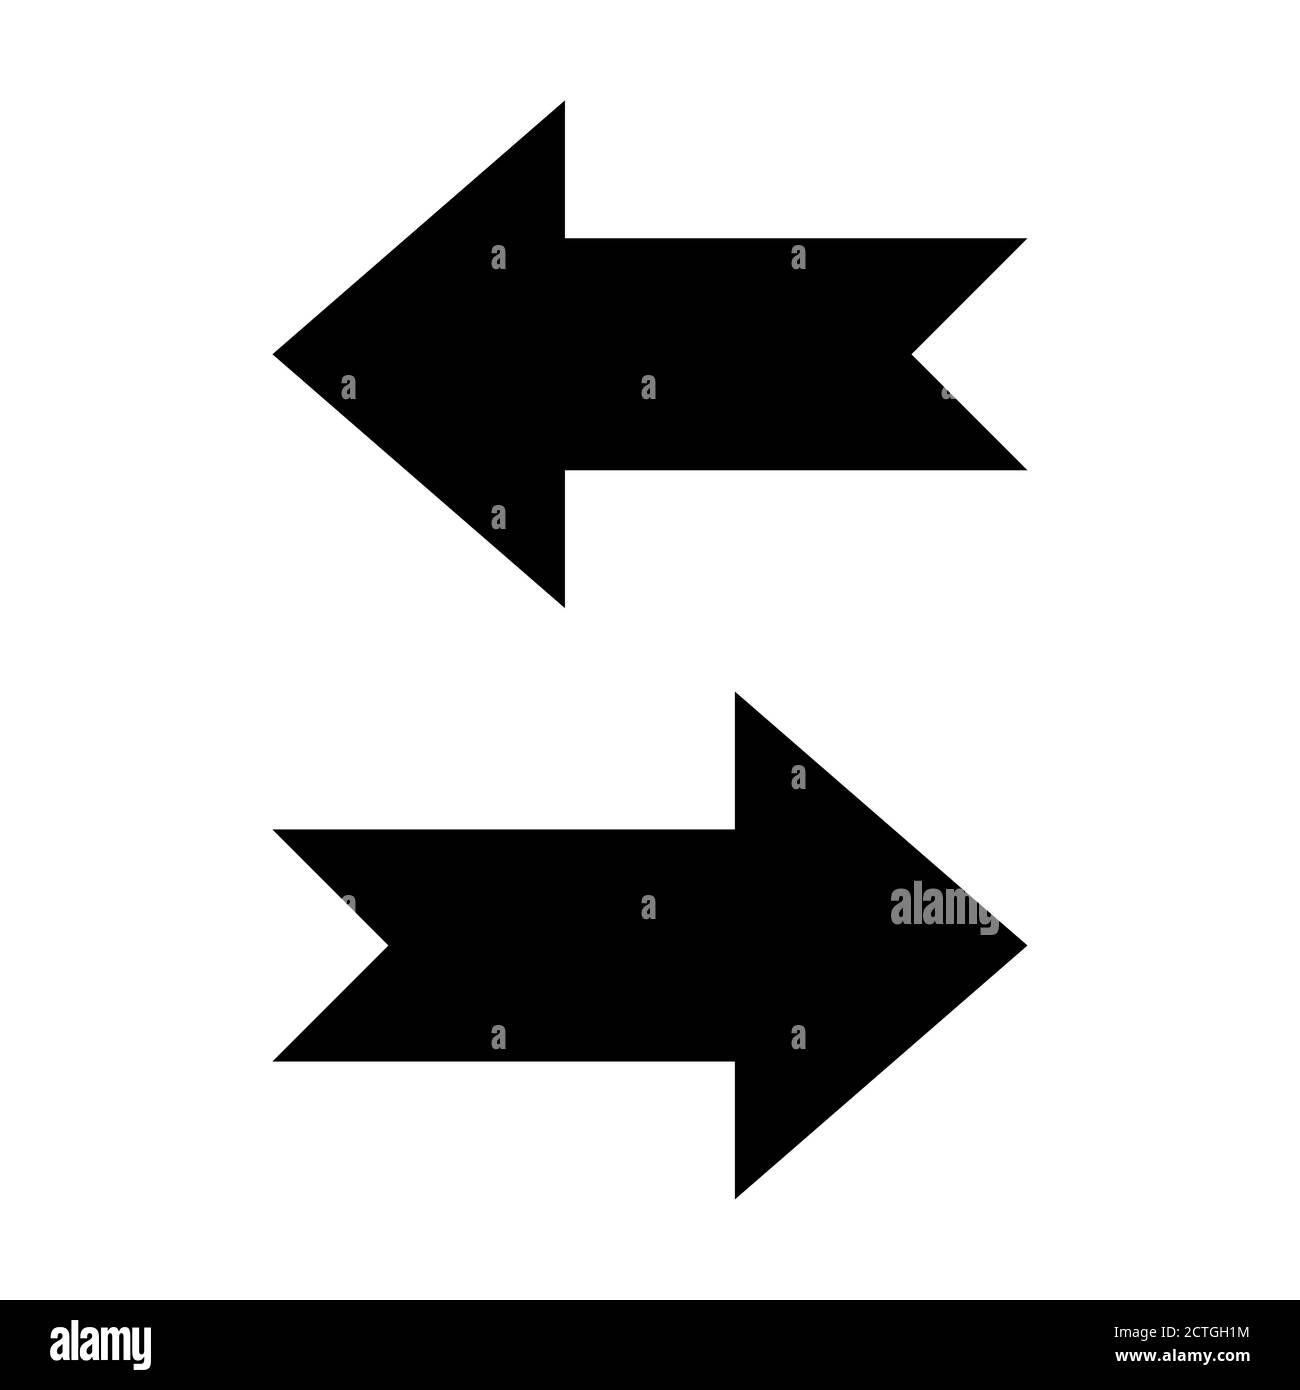 Icone di direzione della freccia con le code a forma di nastro che mostrano sinistra e destra. Immagine vettoriale. Illustrazione Vettoriale